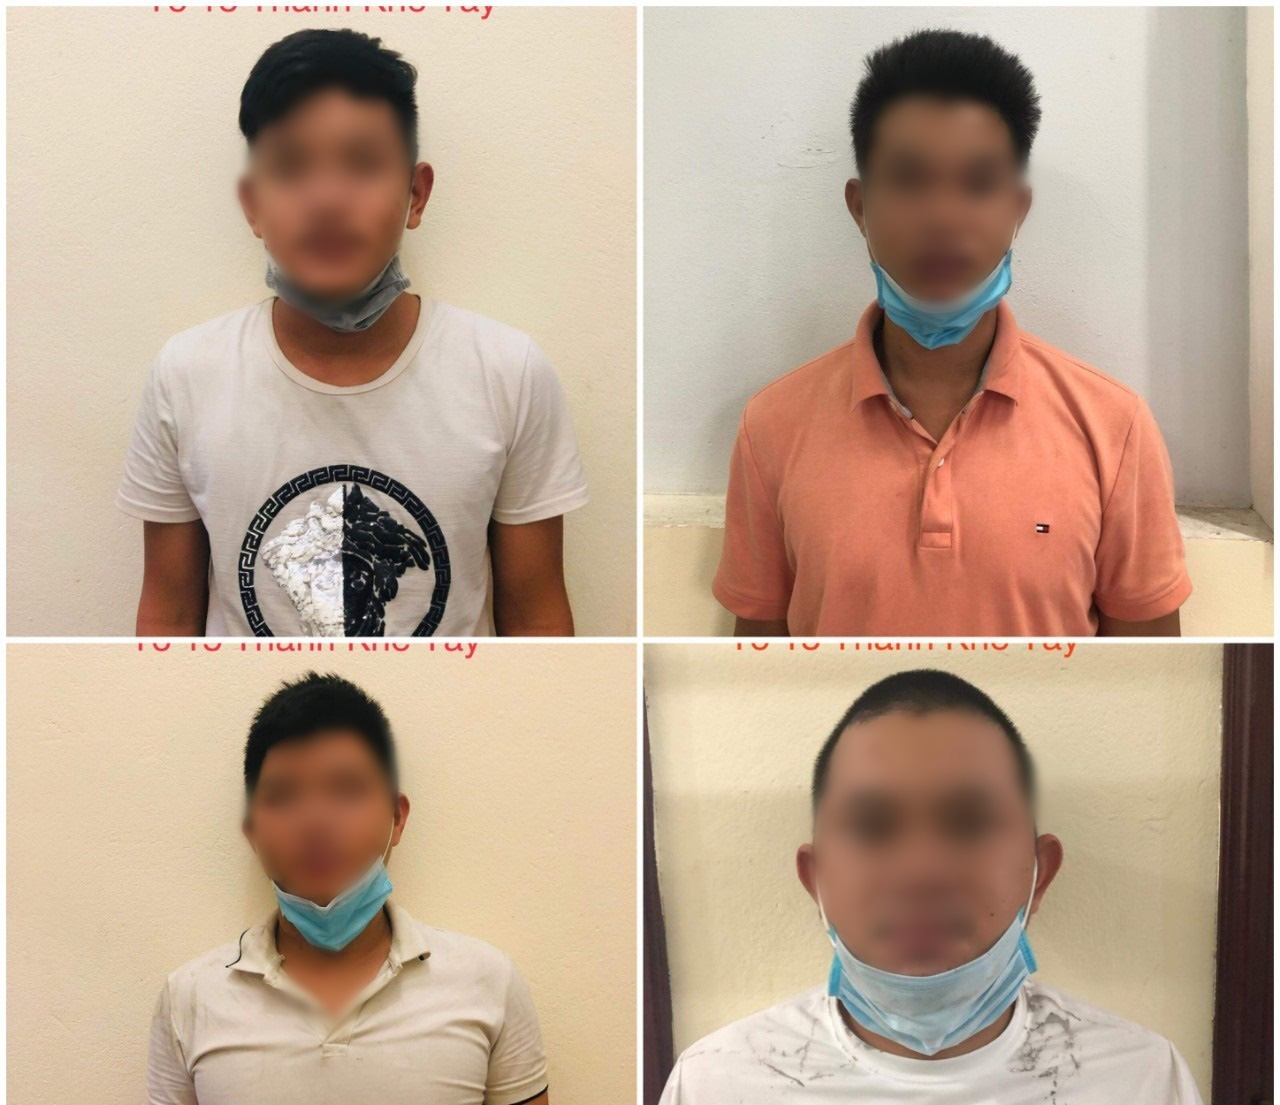 Đà Nẵng: Tổ chức ăn nhậu giữa mùa dịch Covid-19, 4 thanh niên bị phạt 42,5 triệu - Ảnh 1